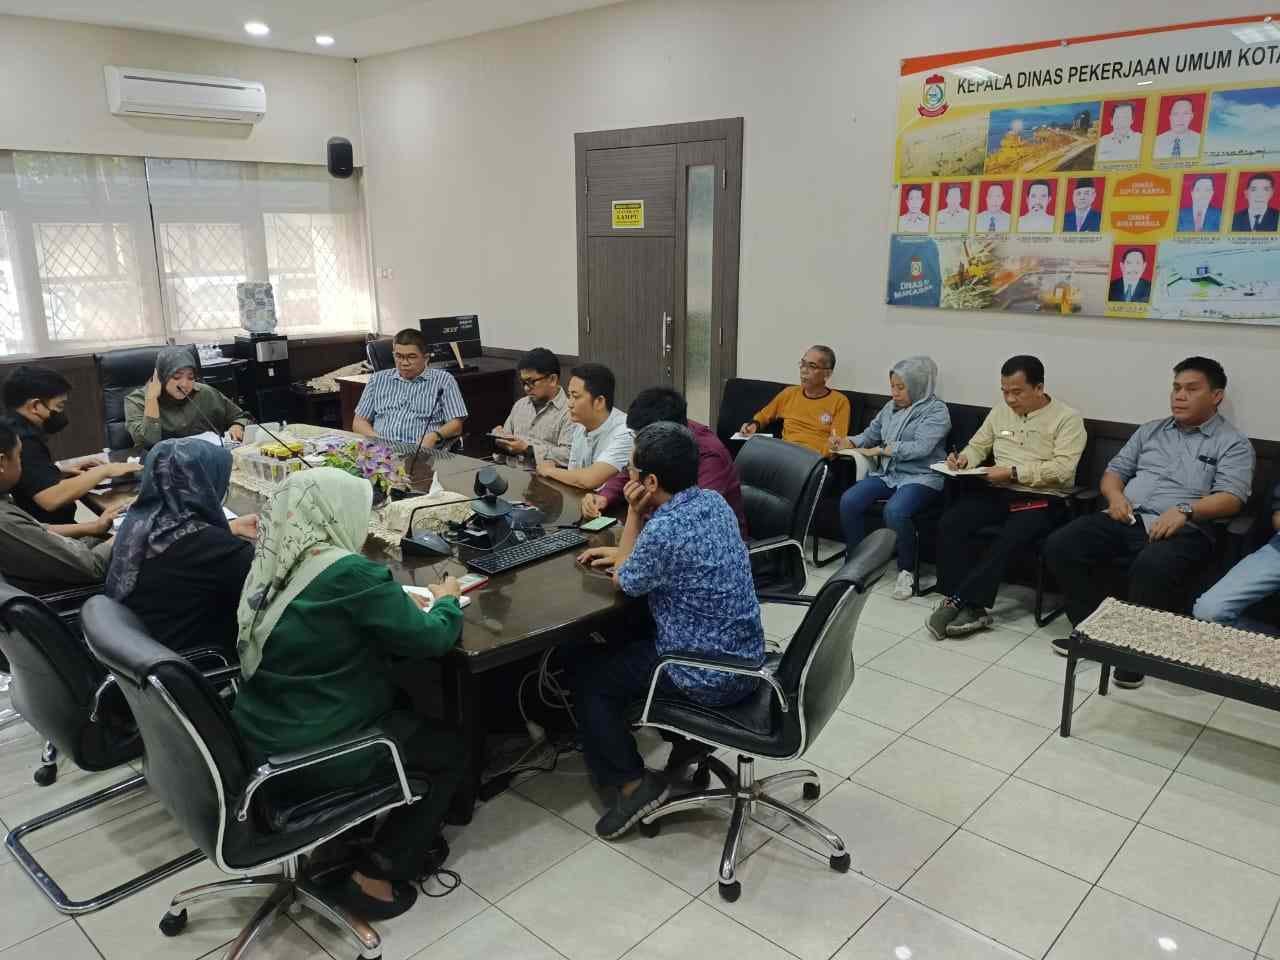 Kadis PU Kota Makassar kumpulkan para pejabat bahas percepatan penyerapan anggaran